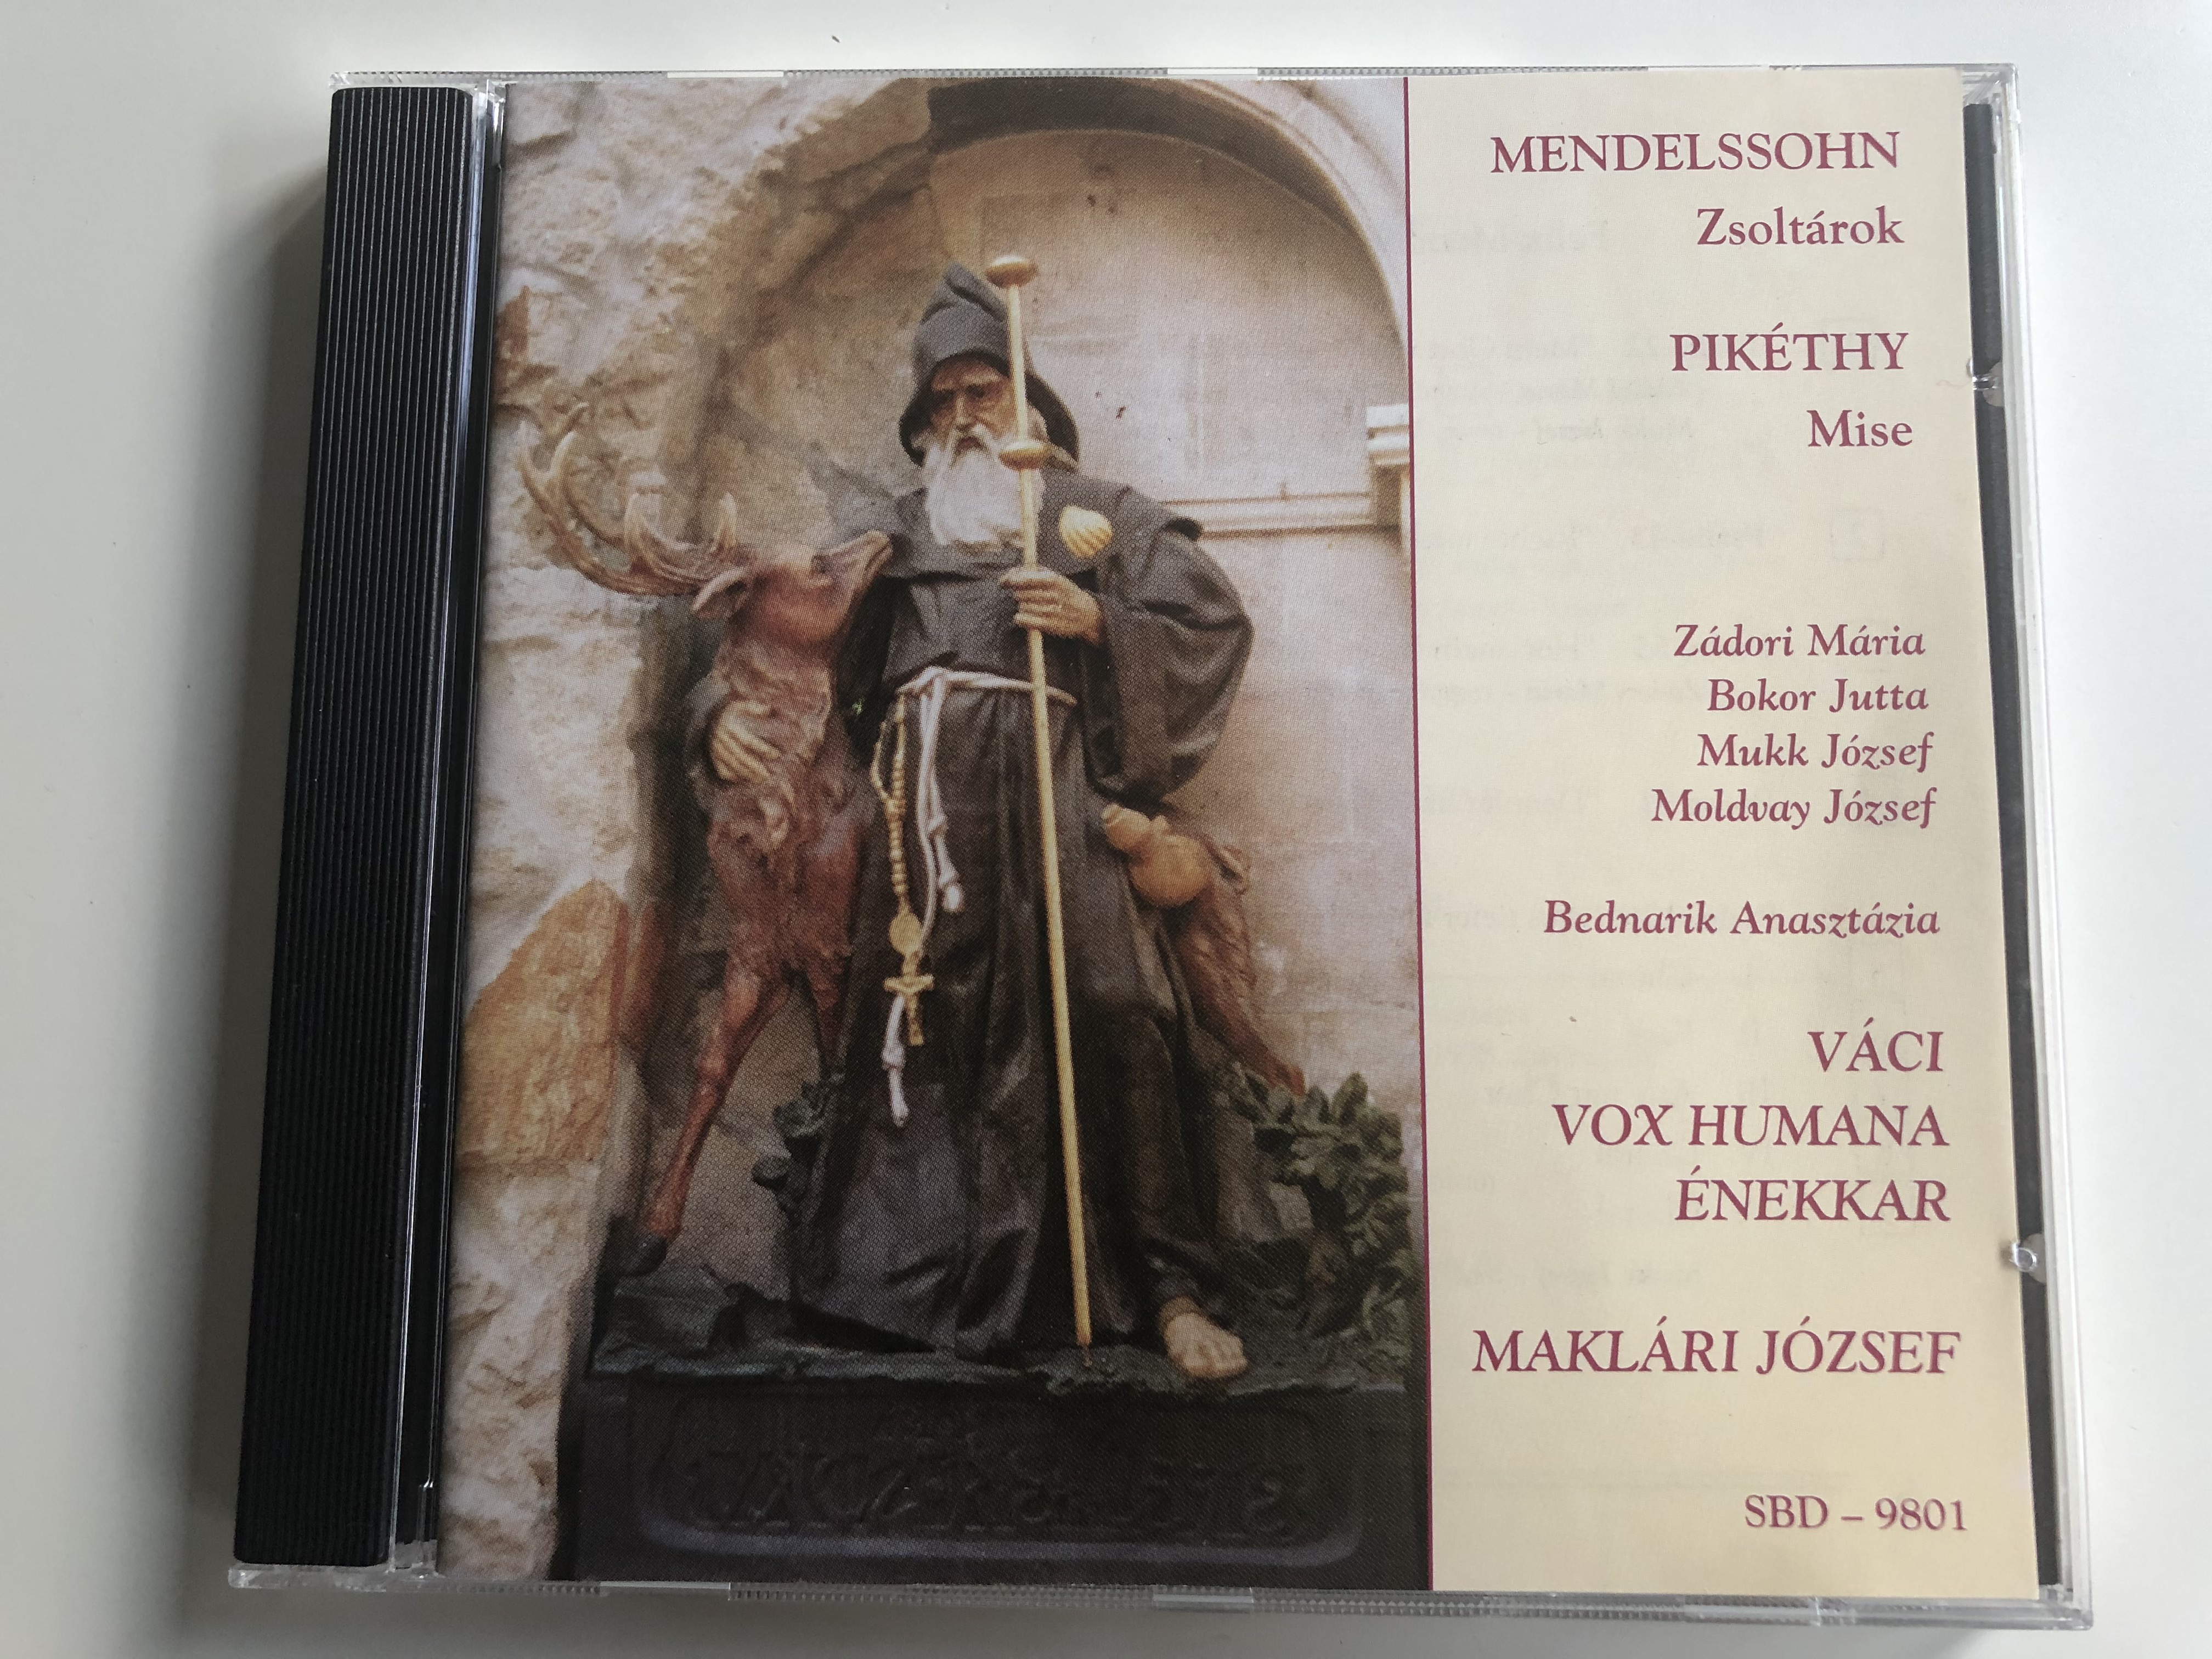 mendelssohn-1anasztazia-vaci-vox-humana-enekkar-maklari-jozsef-somili-audio-cd-1998-sbd-9801-1-.jpg